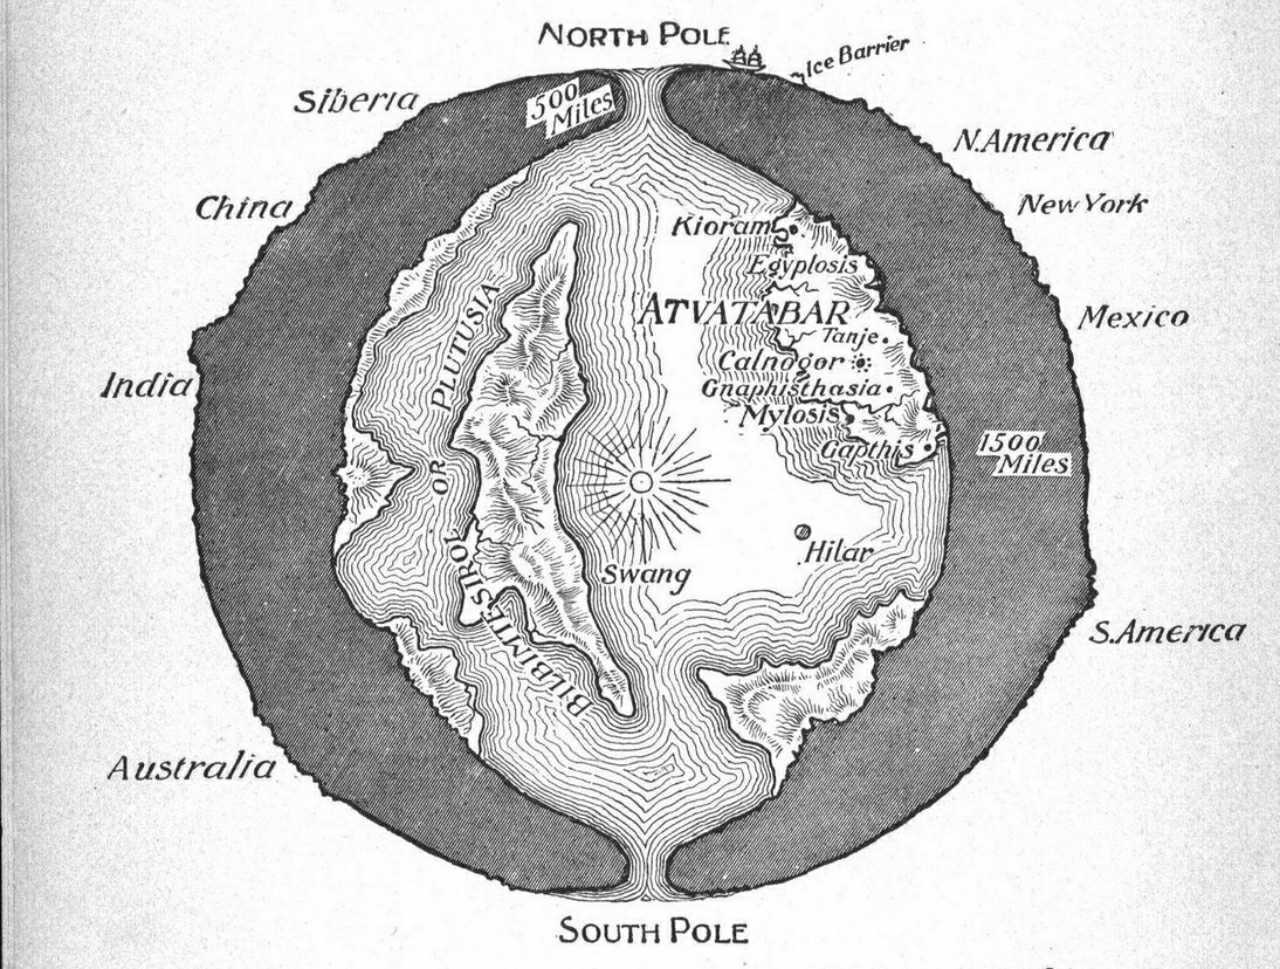 Un dessin en coupe de la planète Terre montrant le "monde intérieur" d'Avatabar, tiré du roman de science-fiction de 1892 de William R. Bradshaw La déesse d'Avatabar